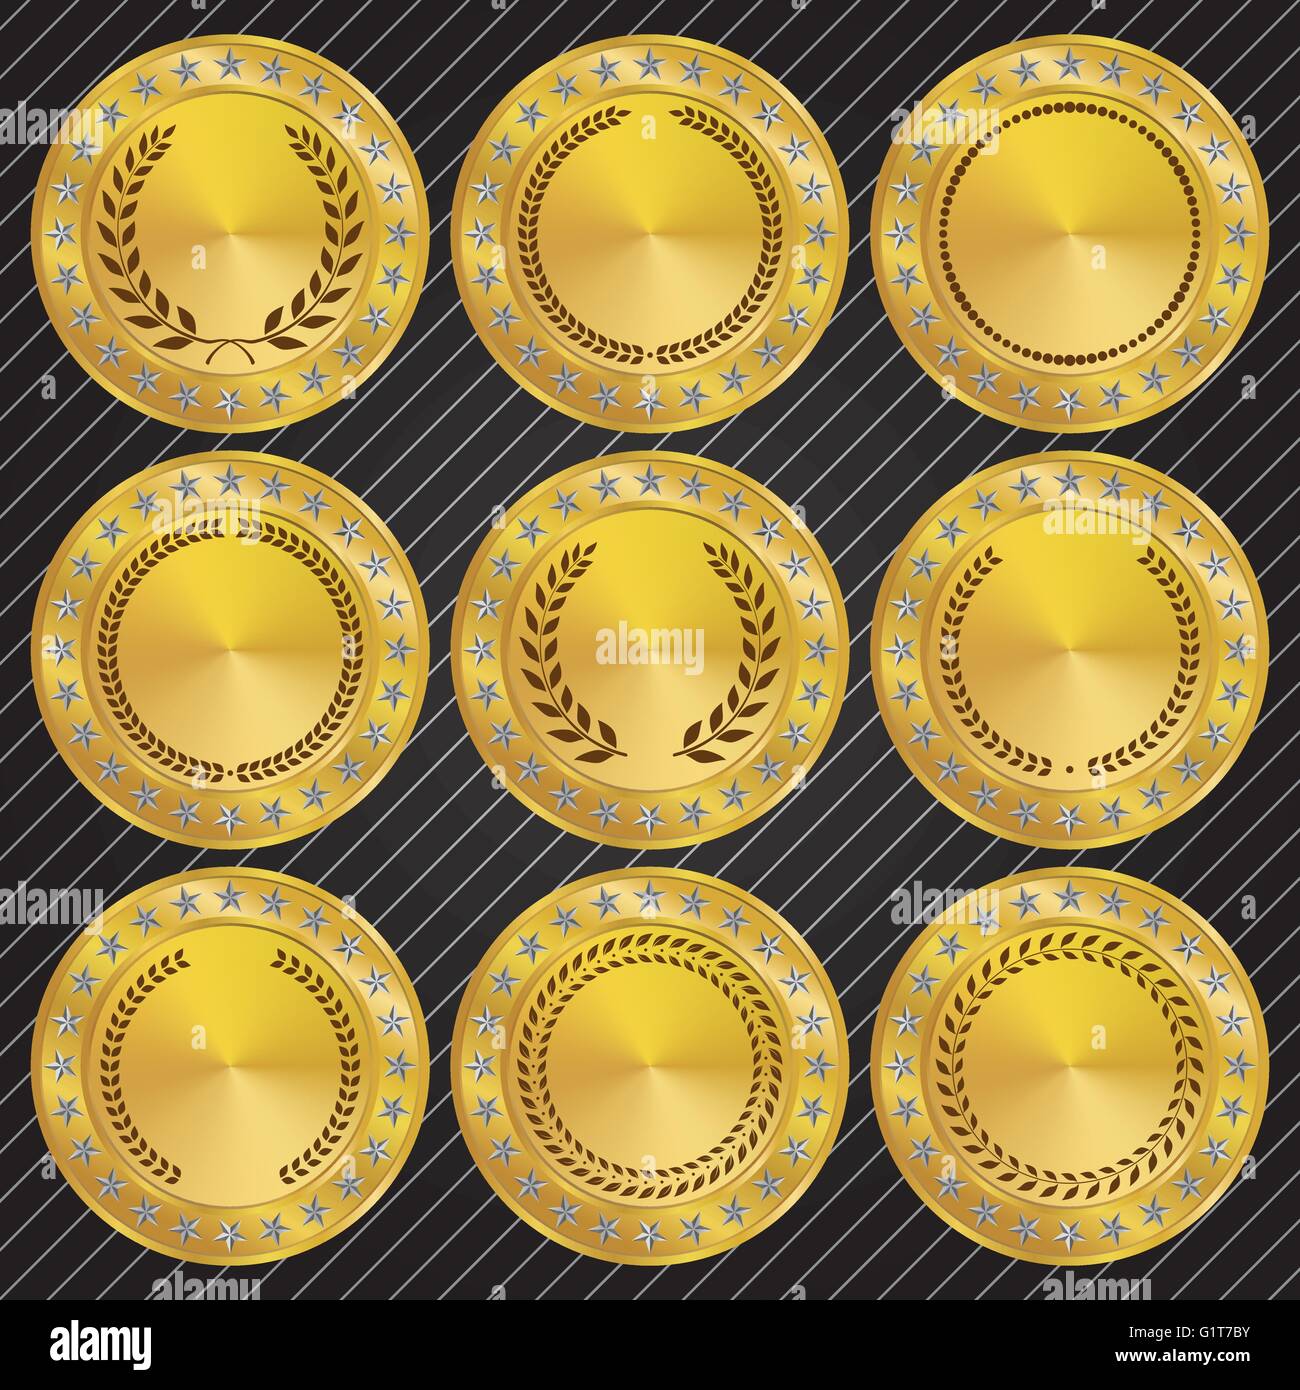 Goldene Medaillons und Medaillen mit Lorbeerkranz Sammlung Stock Vektor